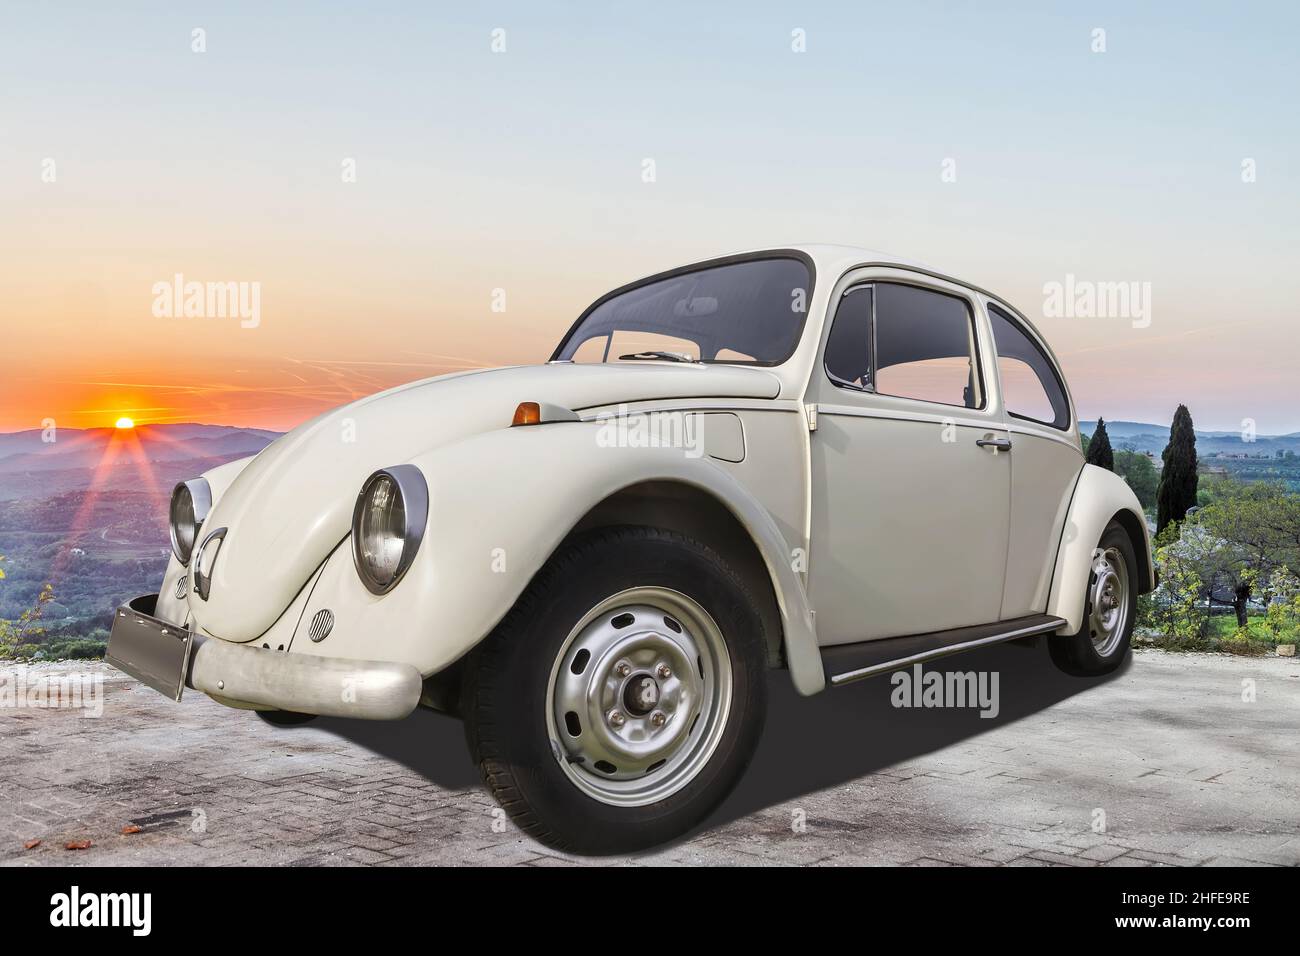 PULA, CROACIA - 21 DE ABRIL de 2018: VW escarabajo viejo-temporizador coche estacionado al aire libre contra la puesta de sol, Pula, Istria, Croacia Foto de stock